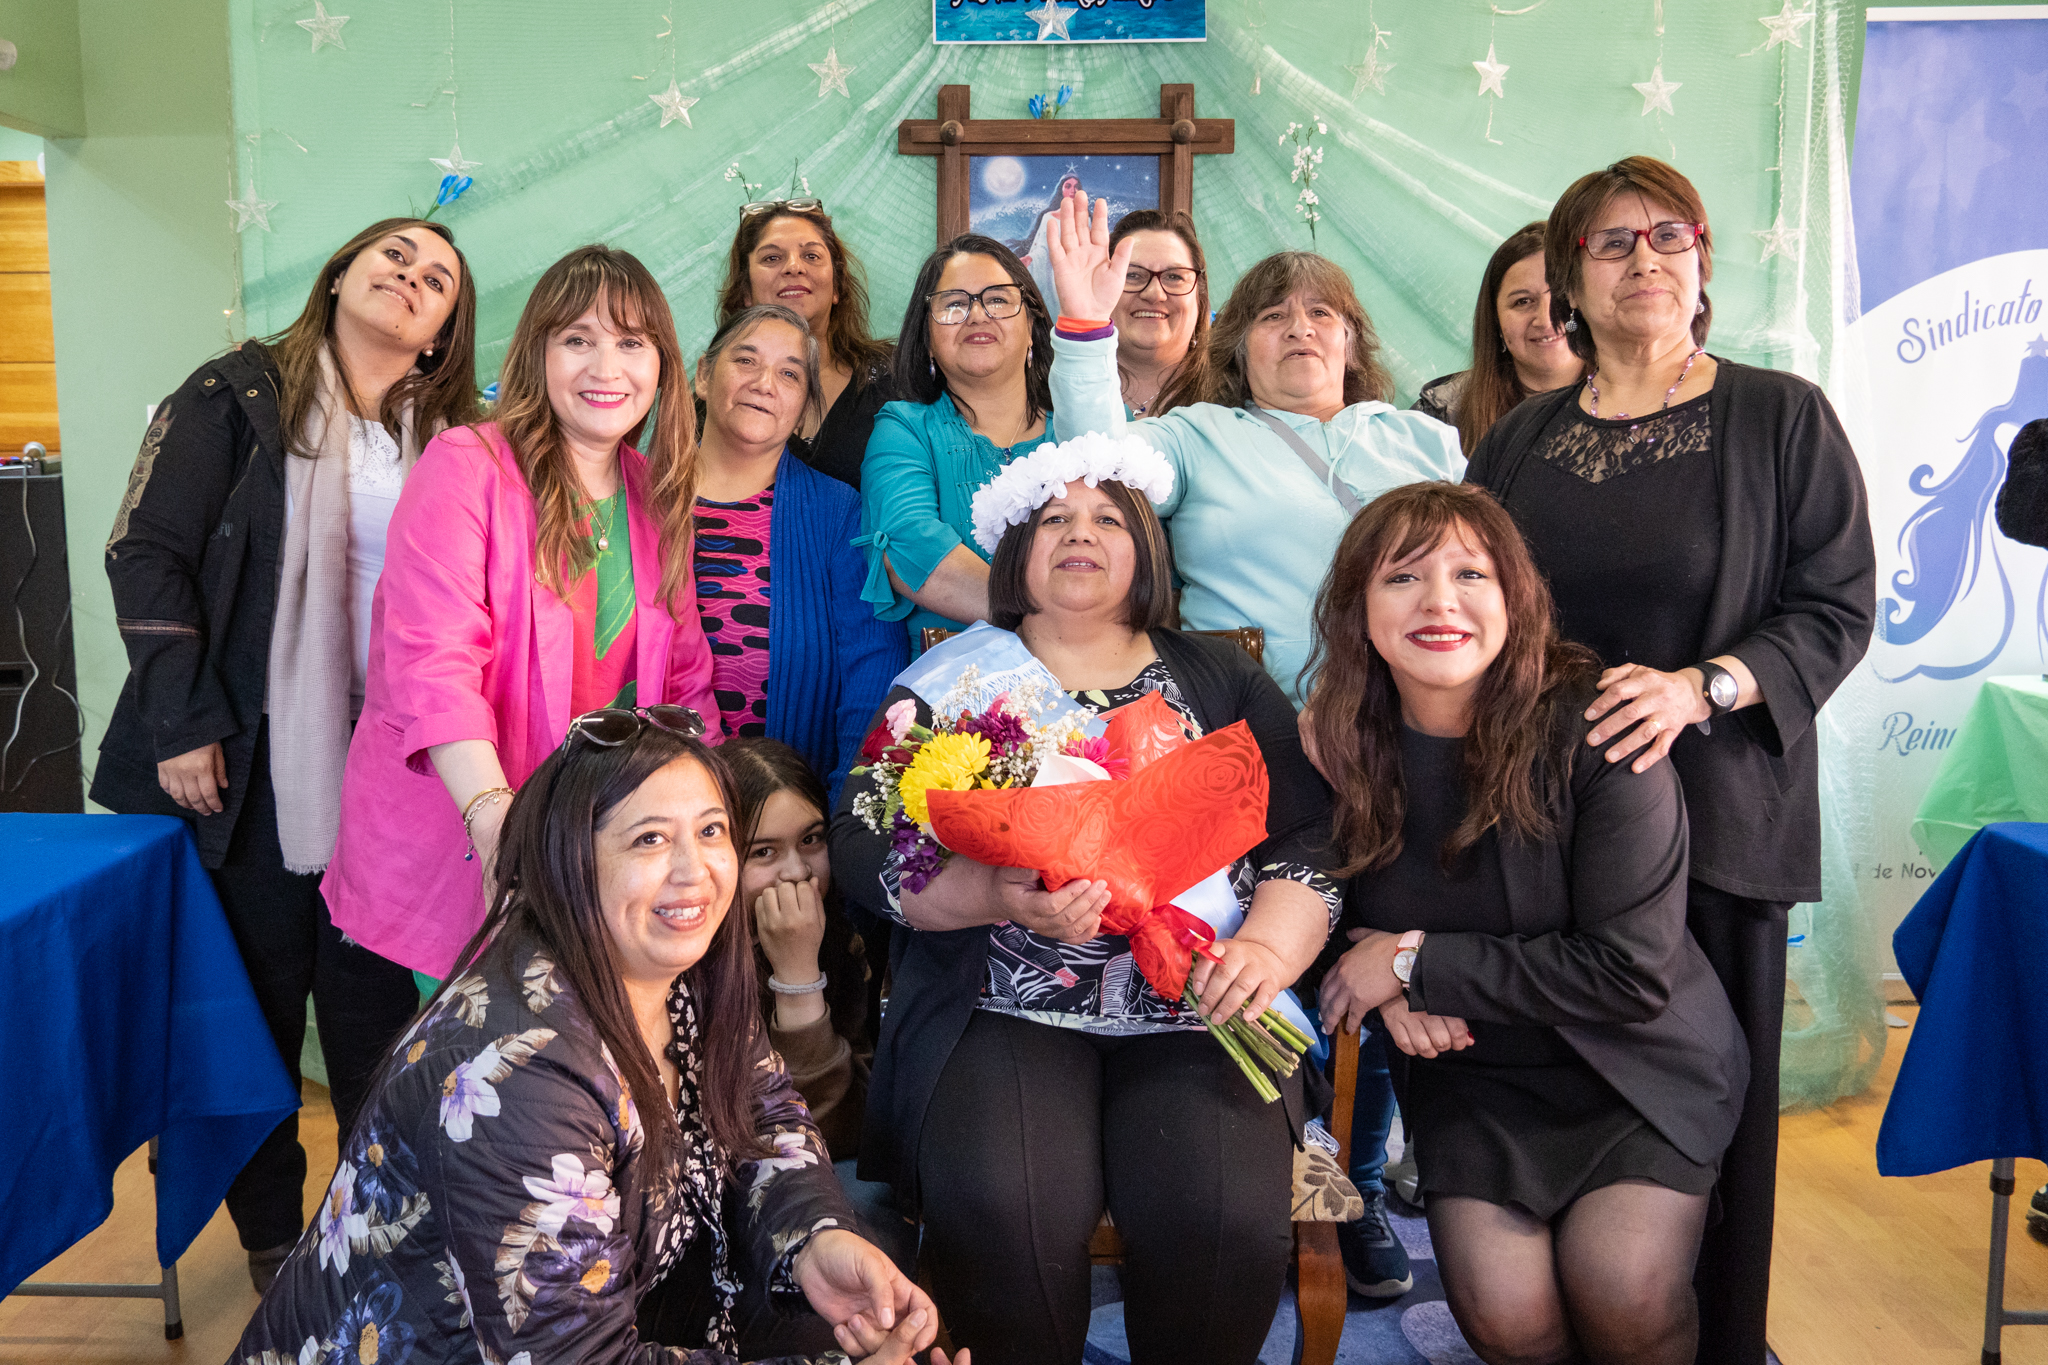 Sindicato de Mujeres de la Pesca Artesanal Iemanjá “Reinas del Mar” conmemoró 15 años de existencia en Puerto Natales